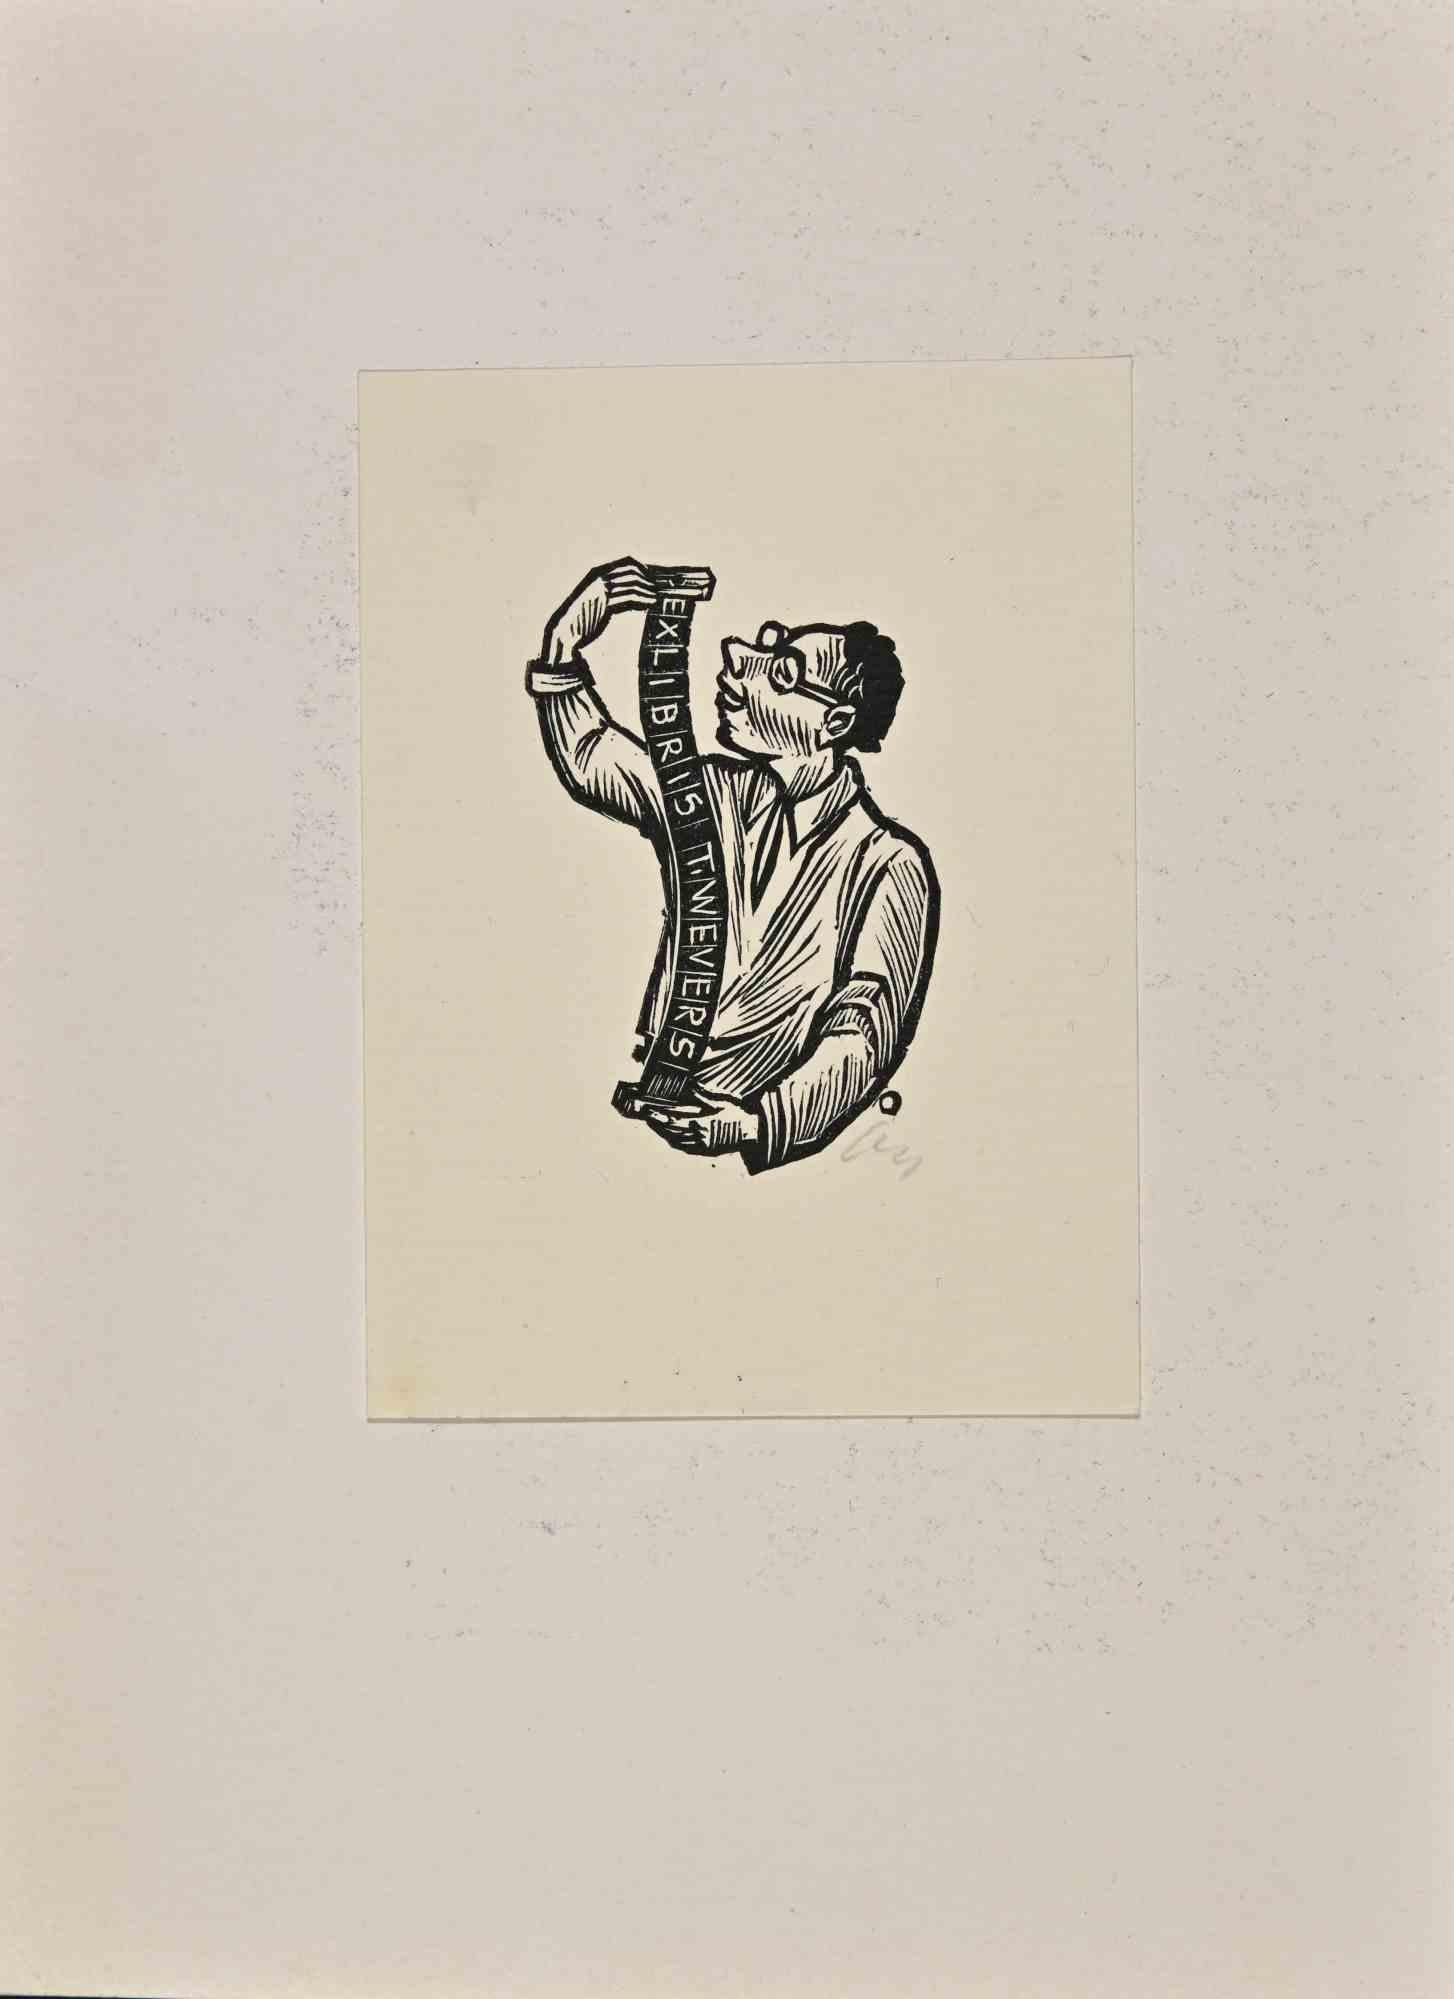   Ex Libris - T. Wevers - Woodcut by Herbert Stefan Ott - 1953 For Sale 1